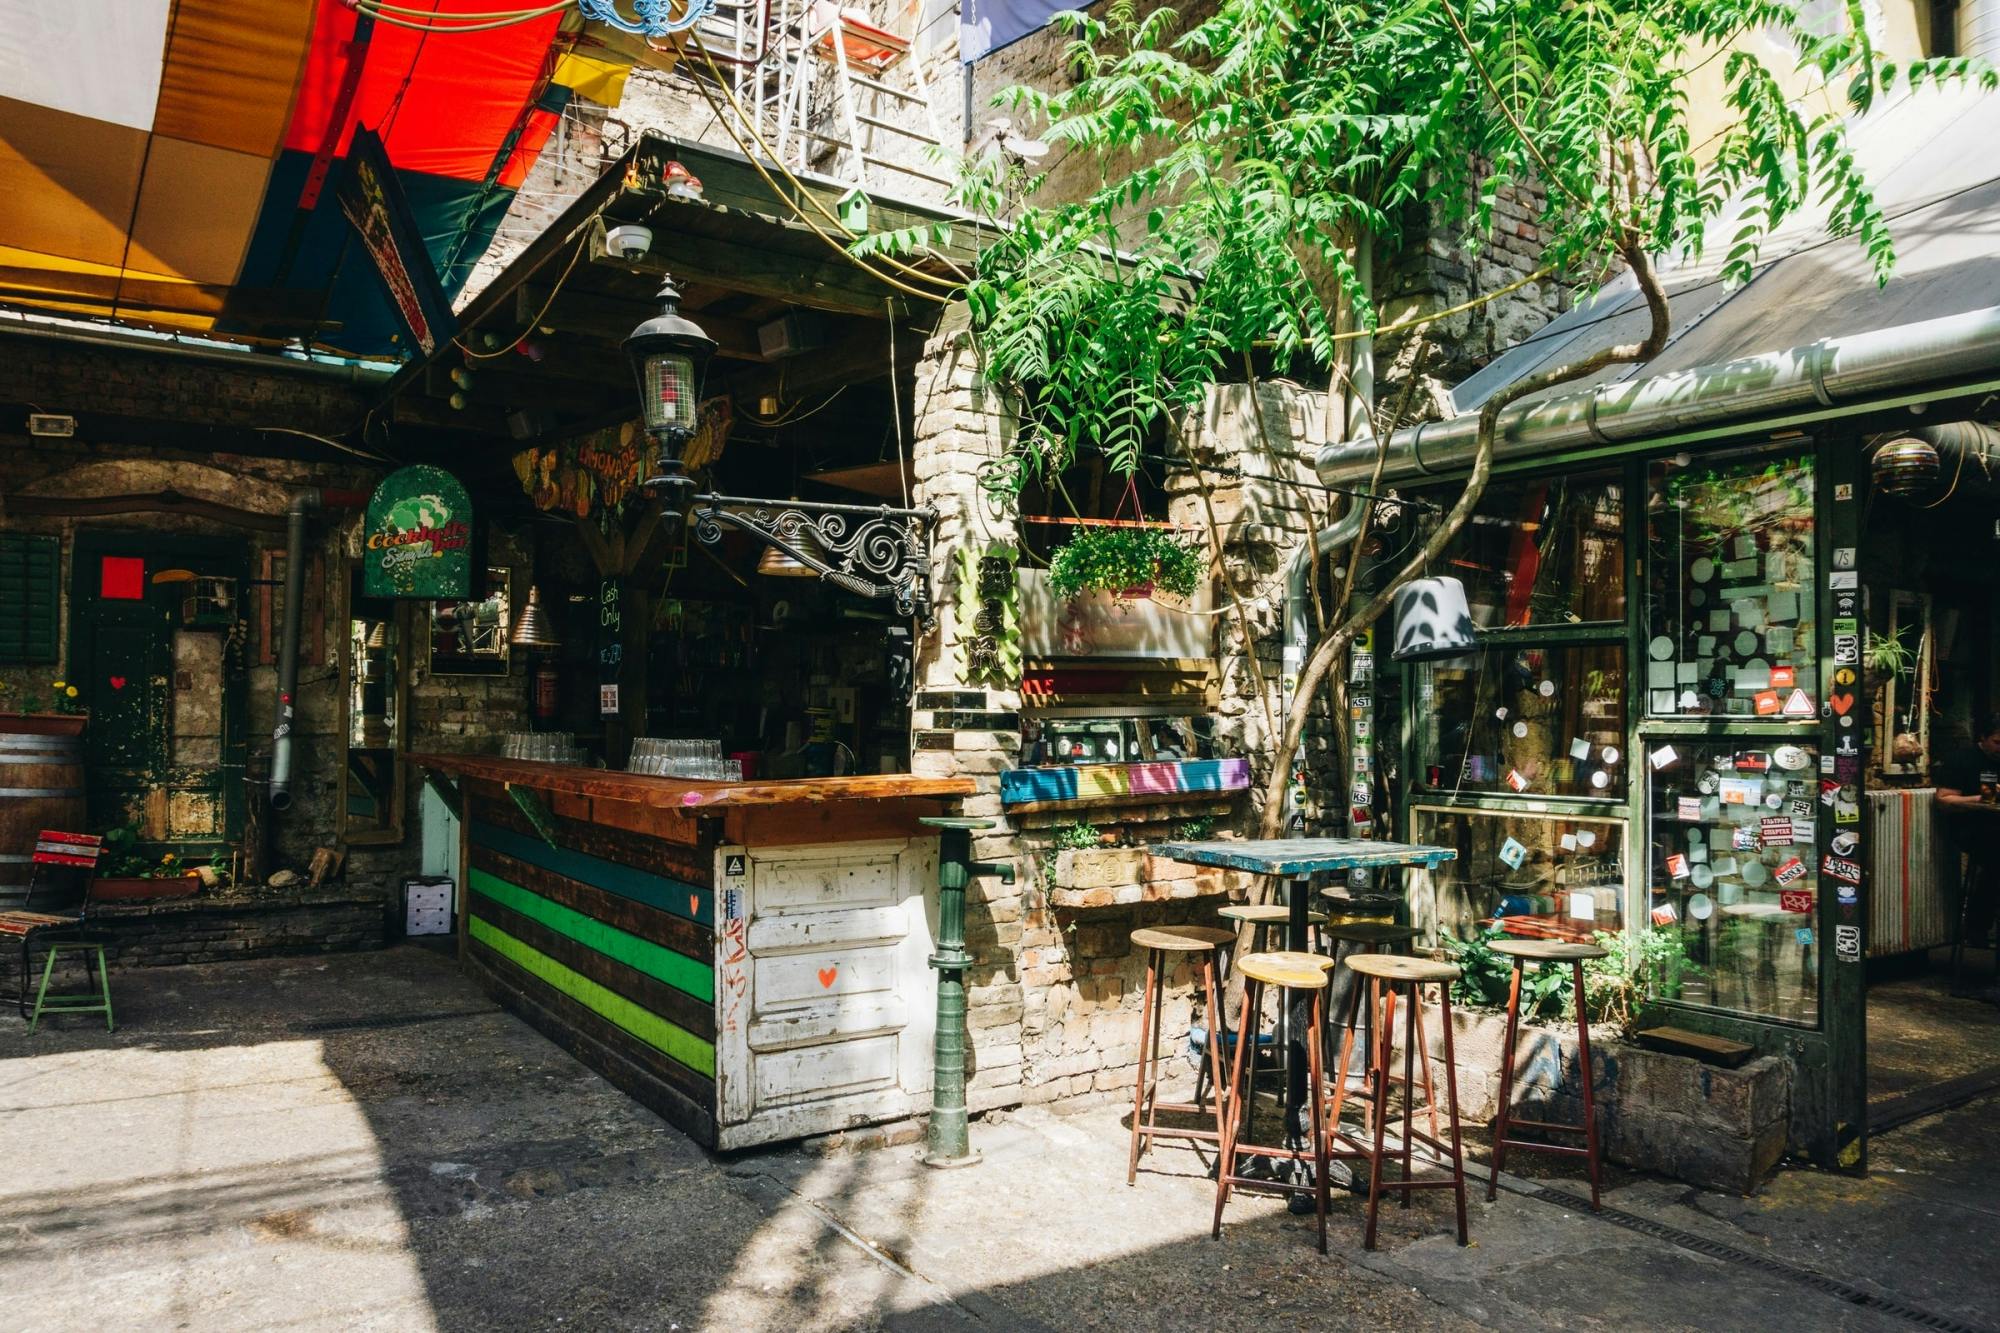 Visita privada a los bares en ruinas de Budapest con un local